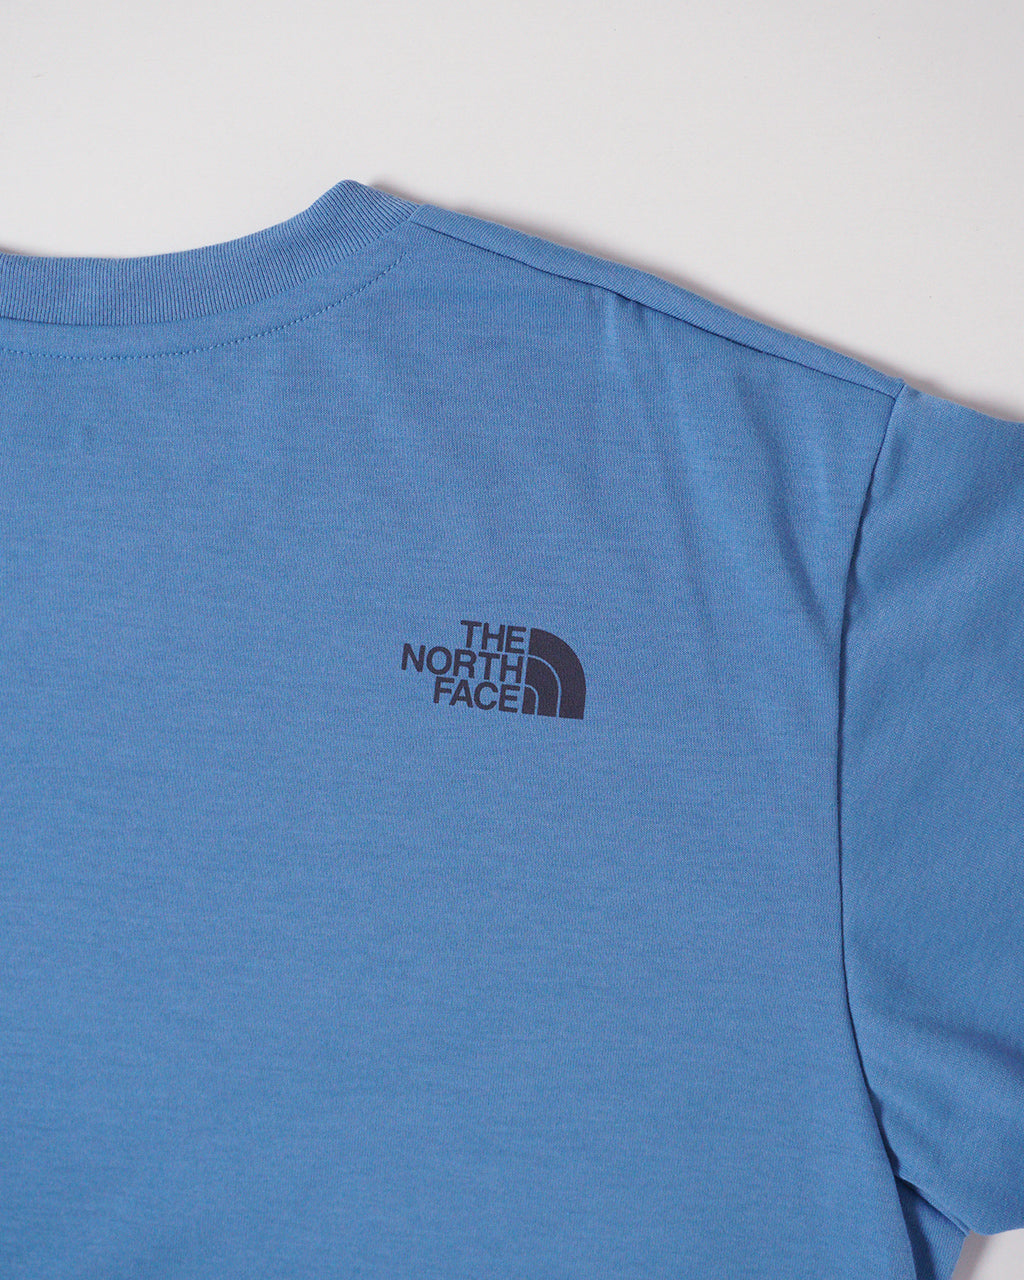 THE NORTH FACE ノースフェイス ショートスリーブ アクティブマン ティー S/S Active Man Tee 半袖 ロゴ Tシャツ